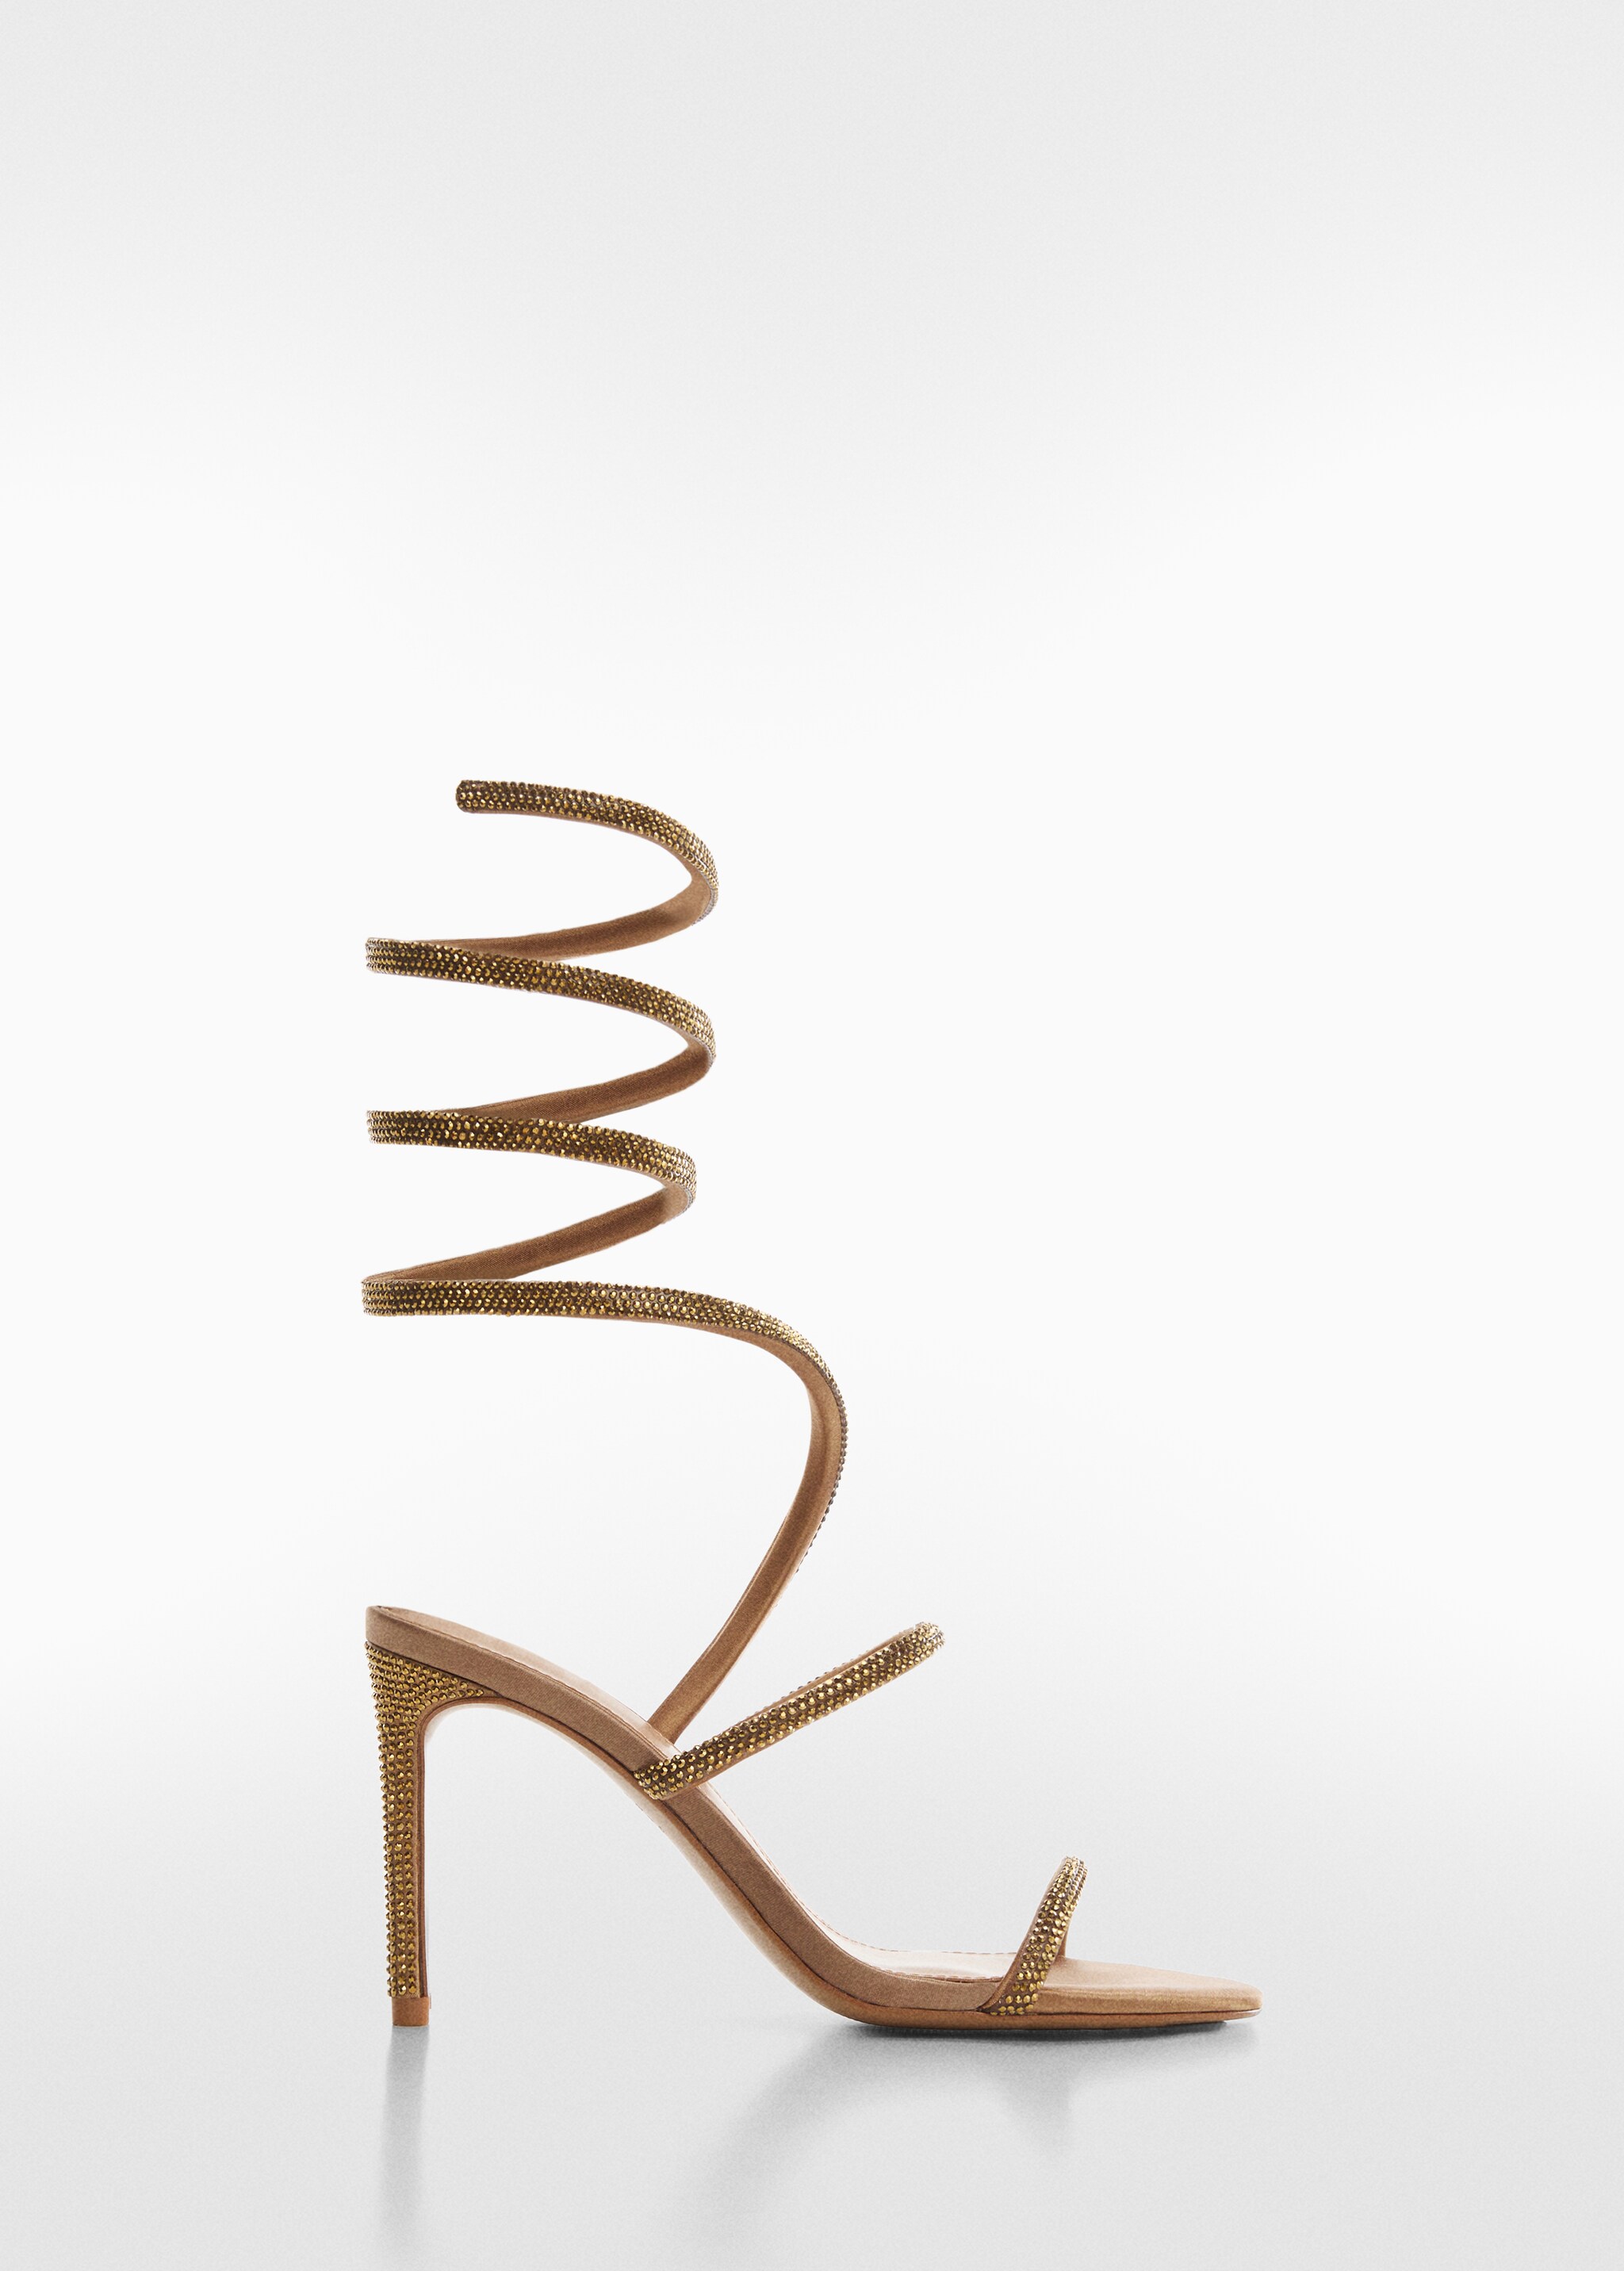 Högklackade sandaler strassrem - Artikel utan modell